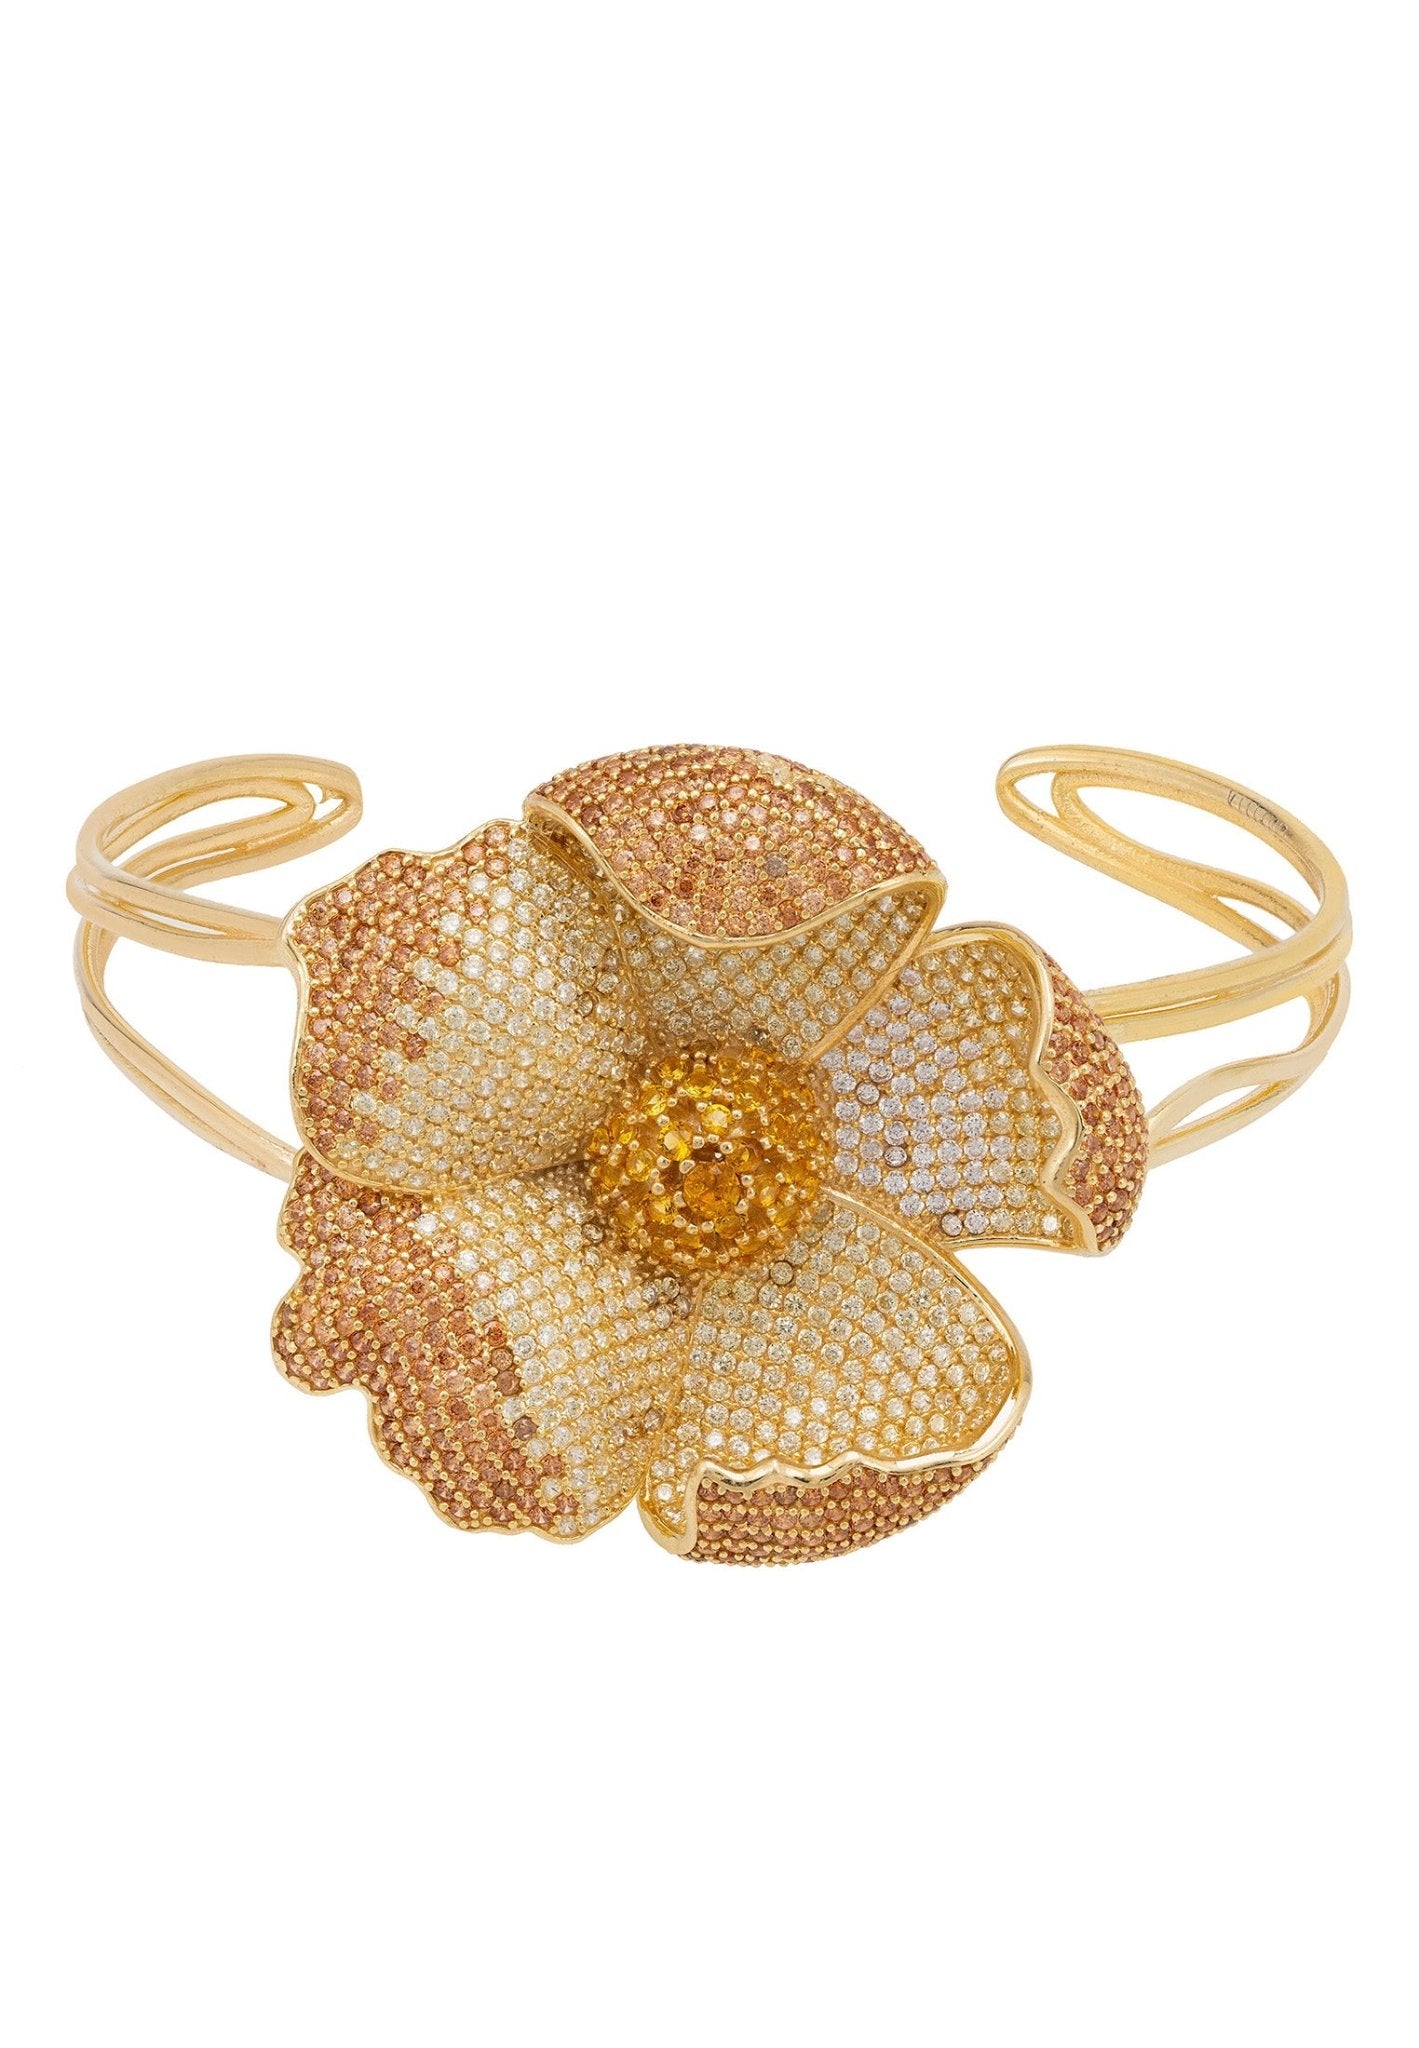 Poppy Bangle Cuff Bracelet Gold Lemon Cz - LATELITA Bracelets